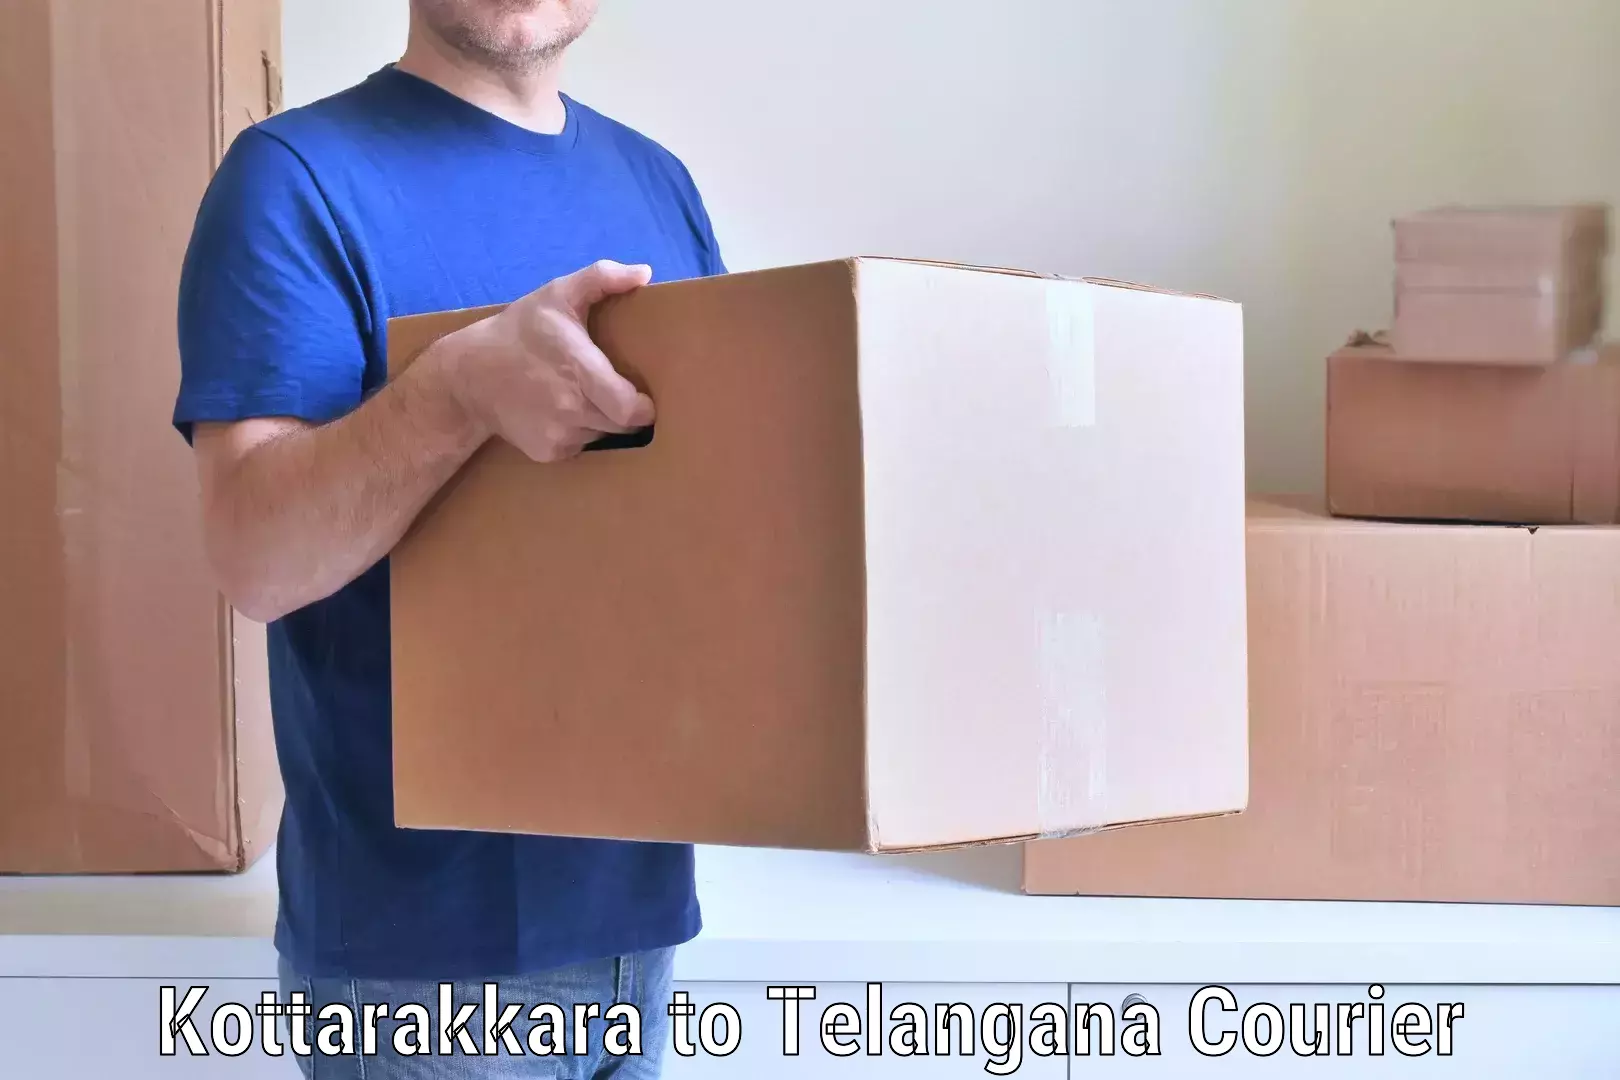 Professional home movers Kottarakkara to Telangana